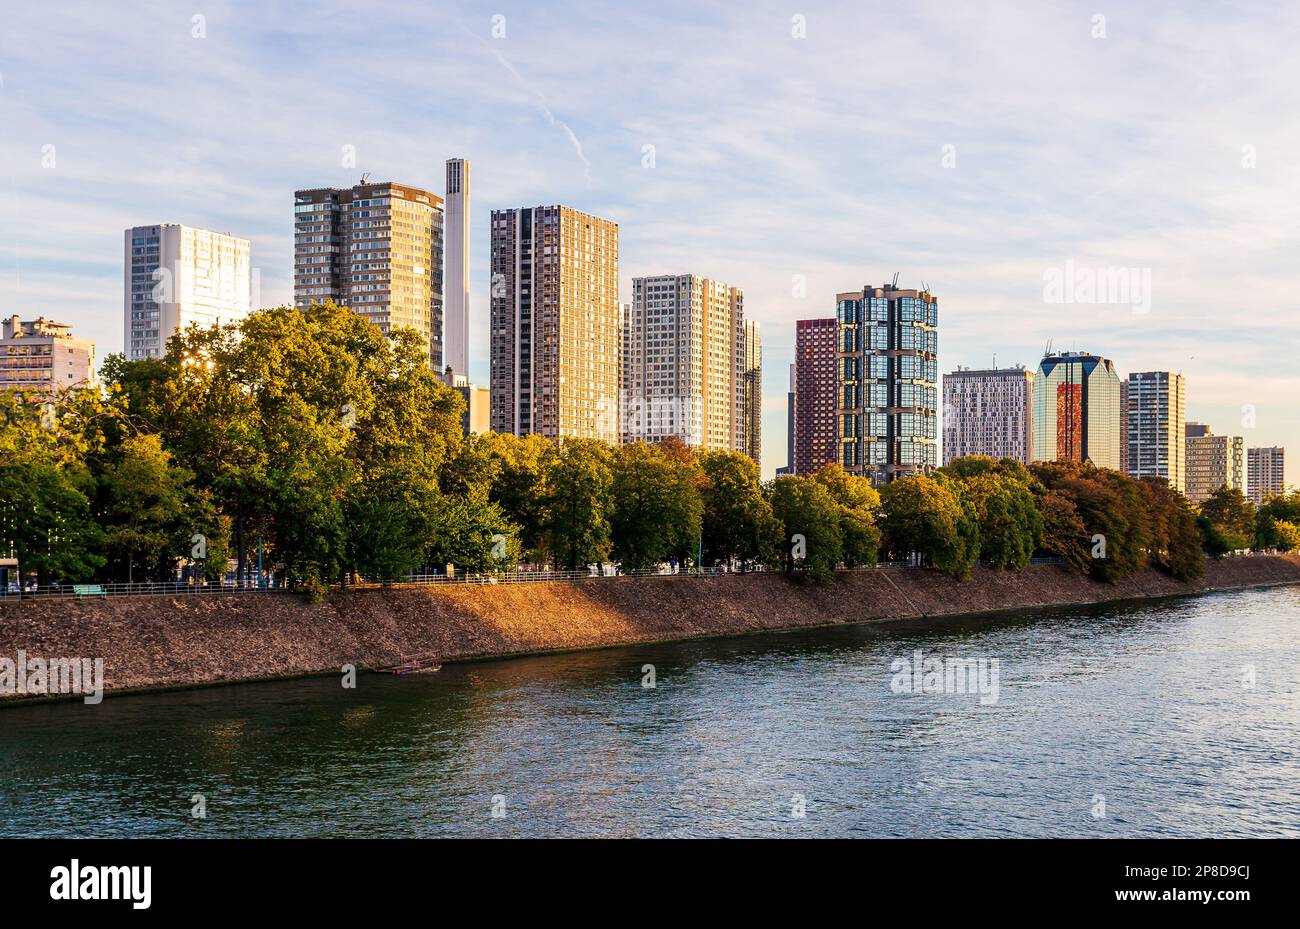 Parigi, Francia - 29 settembre 2018: Edifici nella zona degli affari e parco pubblico vicino alla Senna al tramonto. Foto Stock